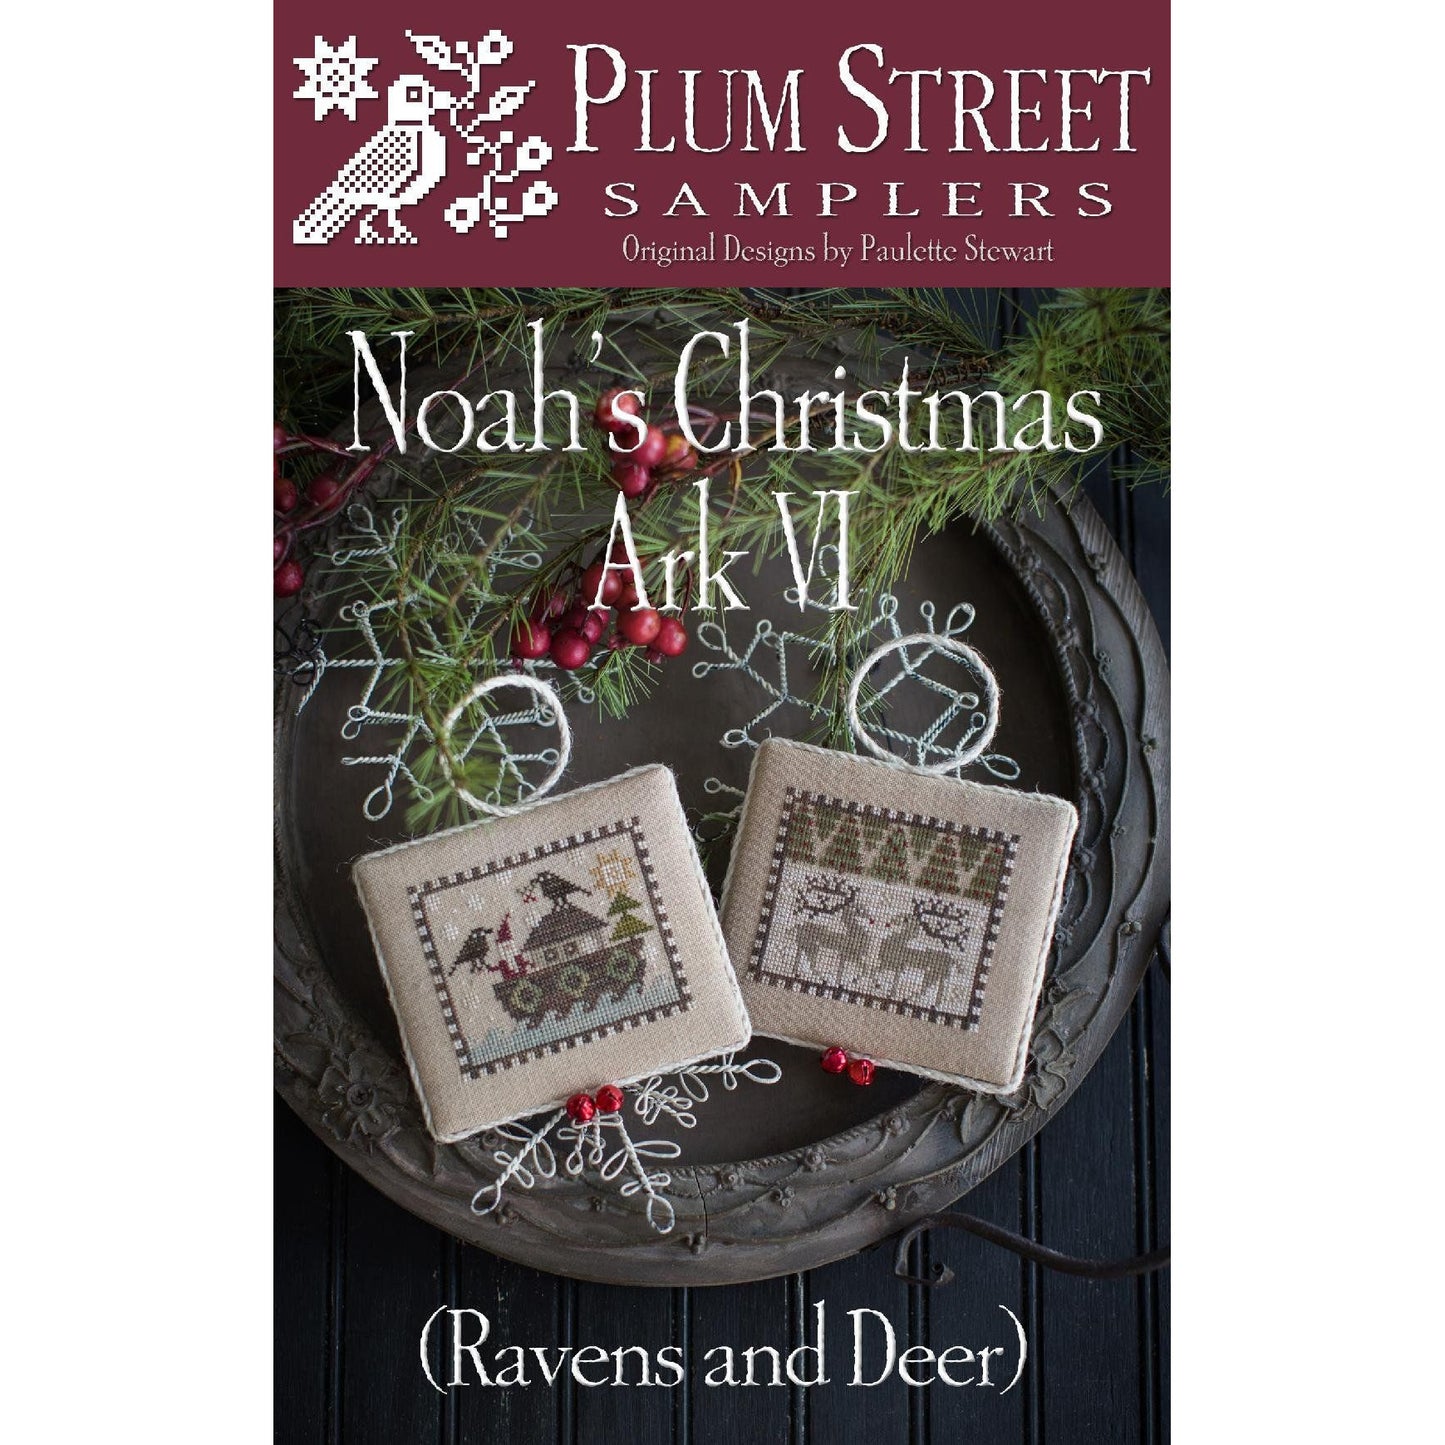 Plum Street Samplers ~ Noah's Christmas Ark VI - Ravens and Deer Pattern